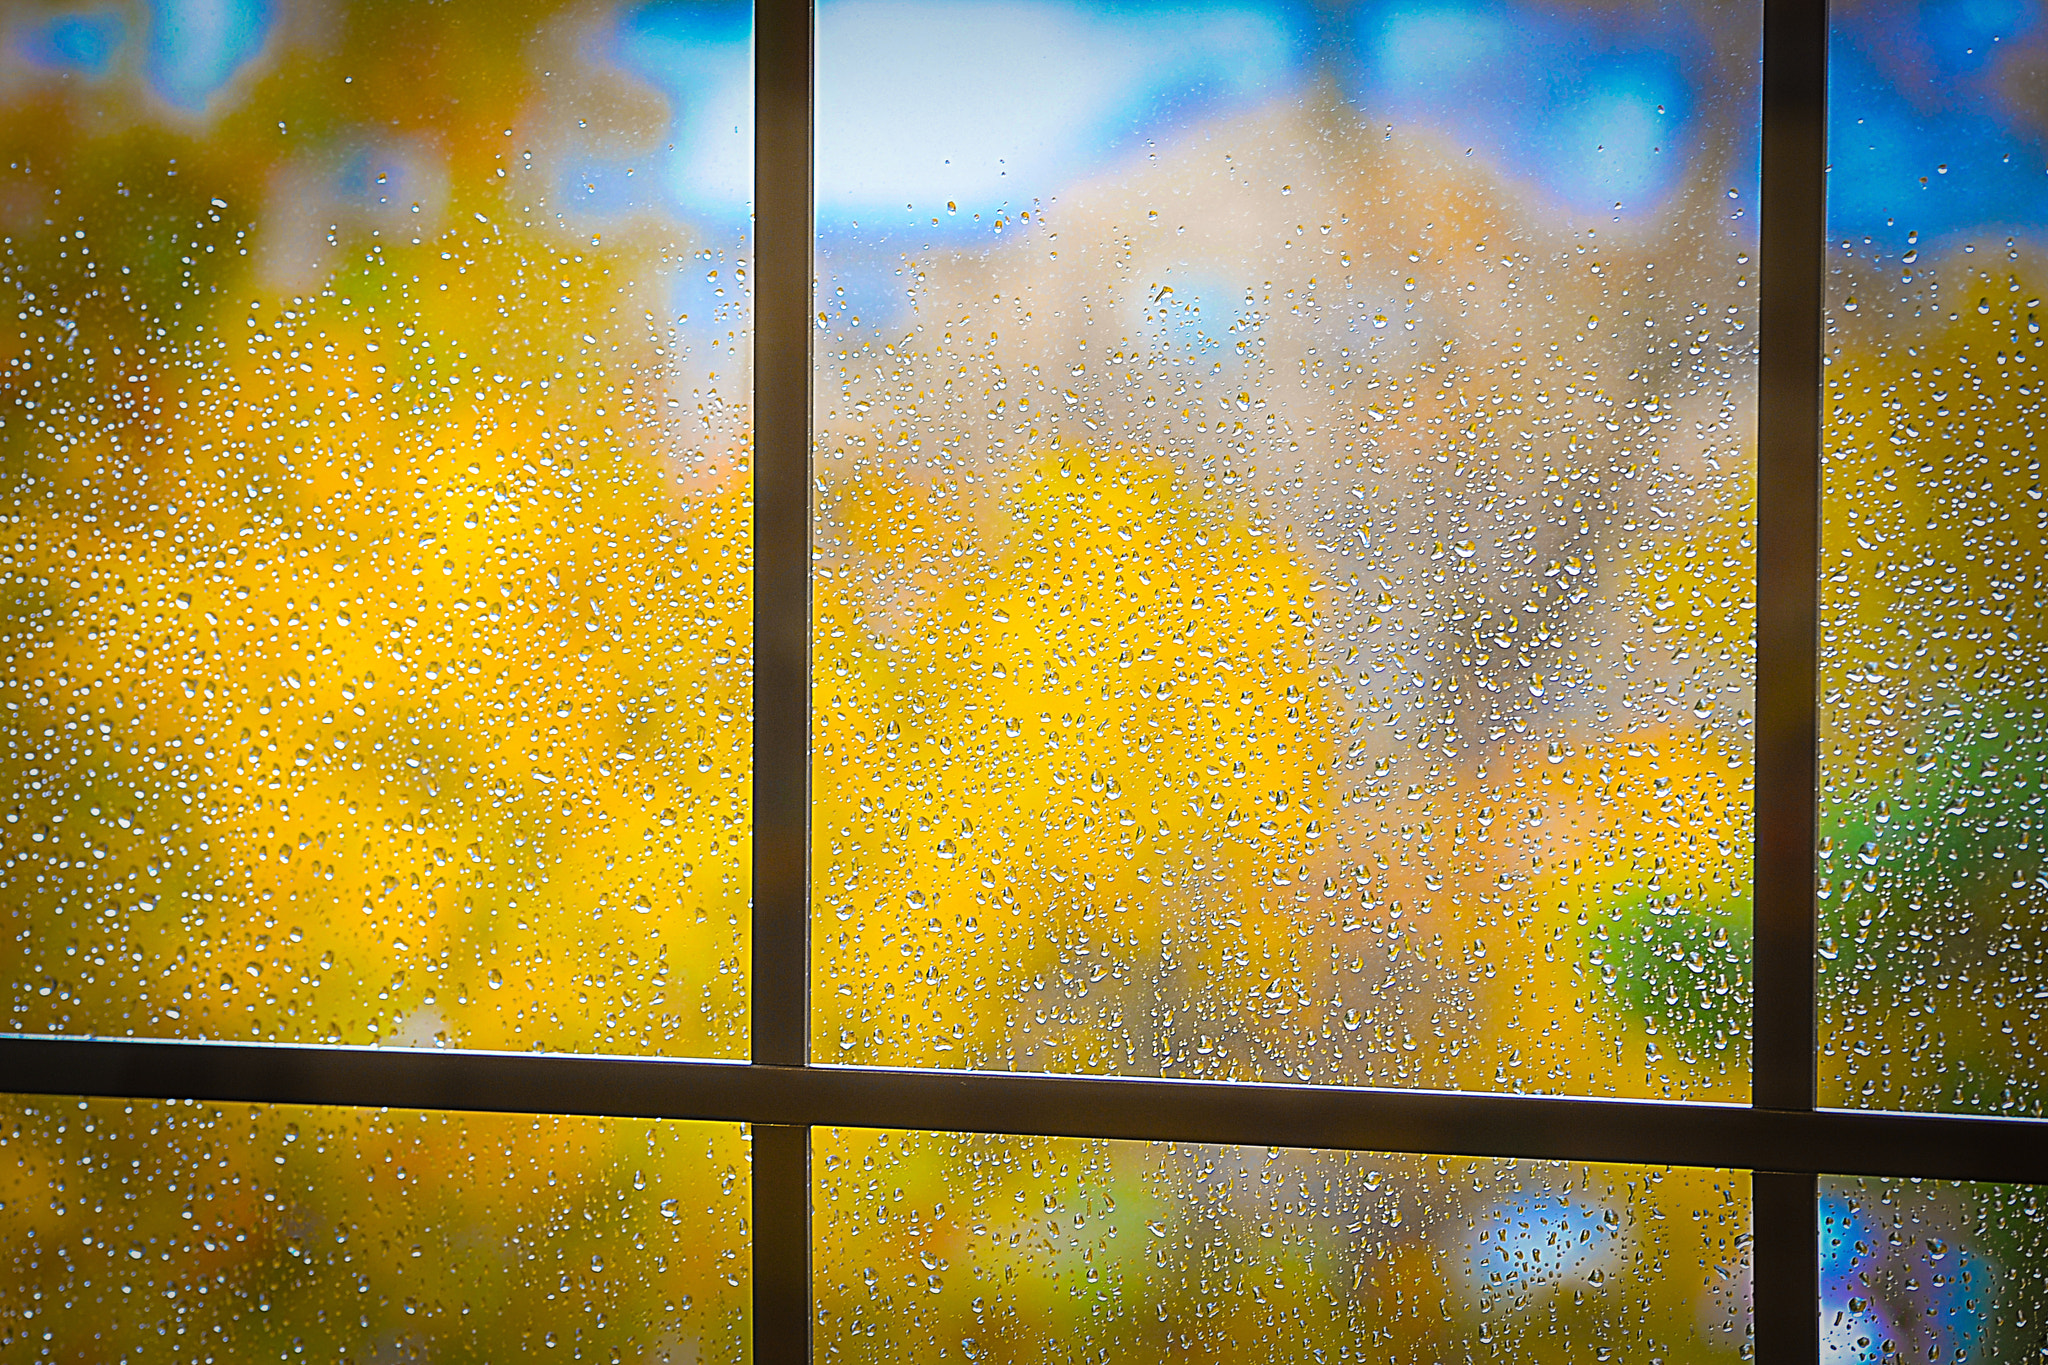 Nikon D3 sample photo. Rainy fall day photography